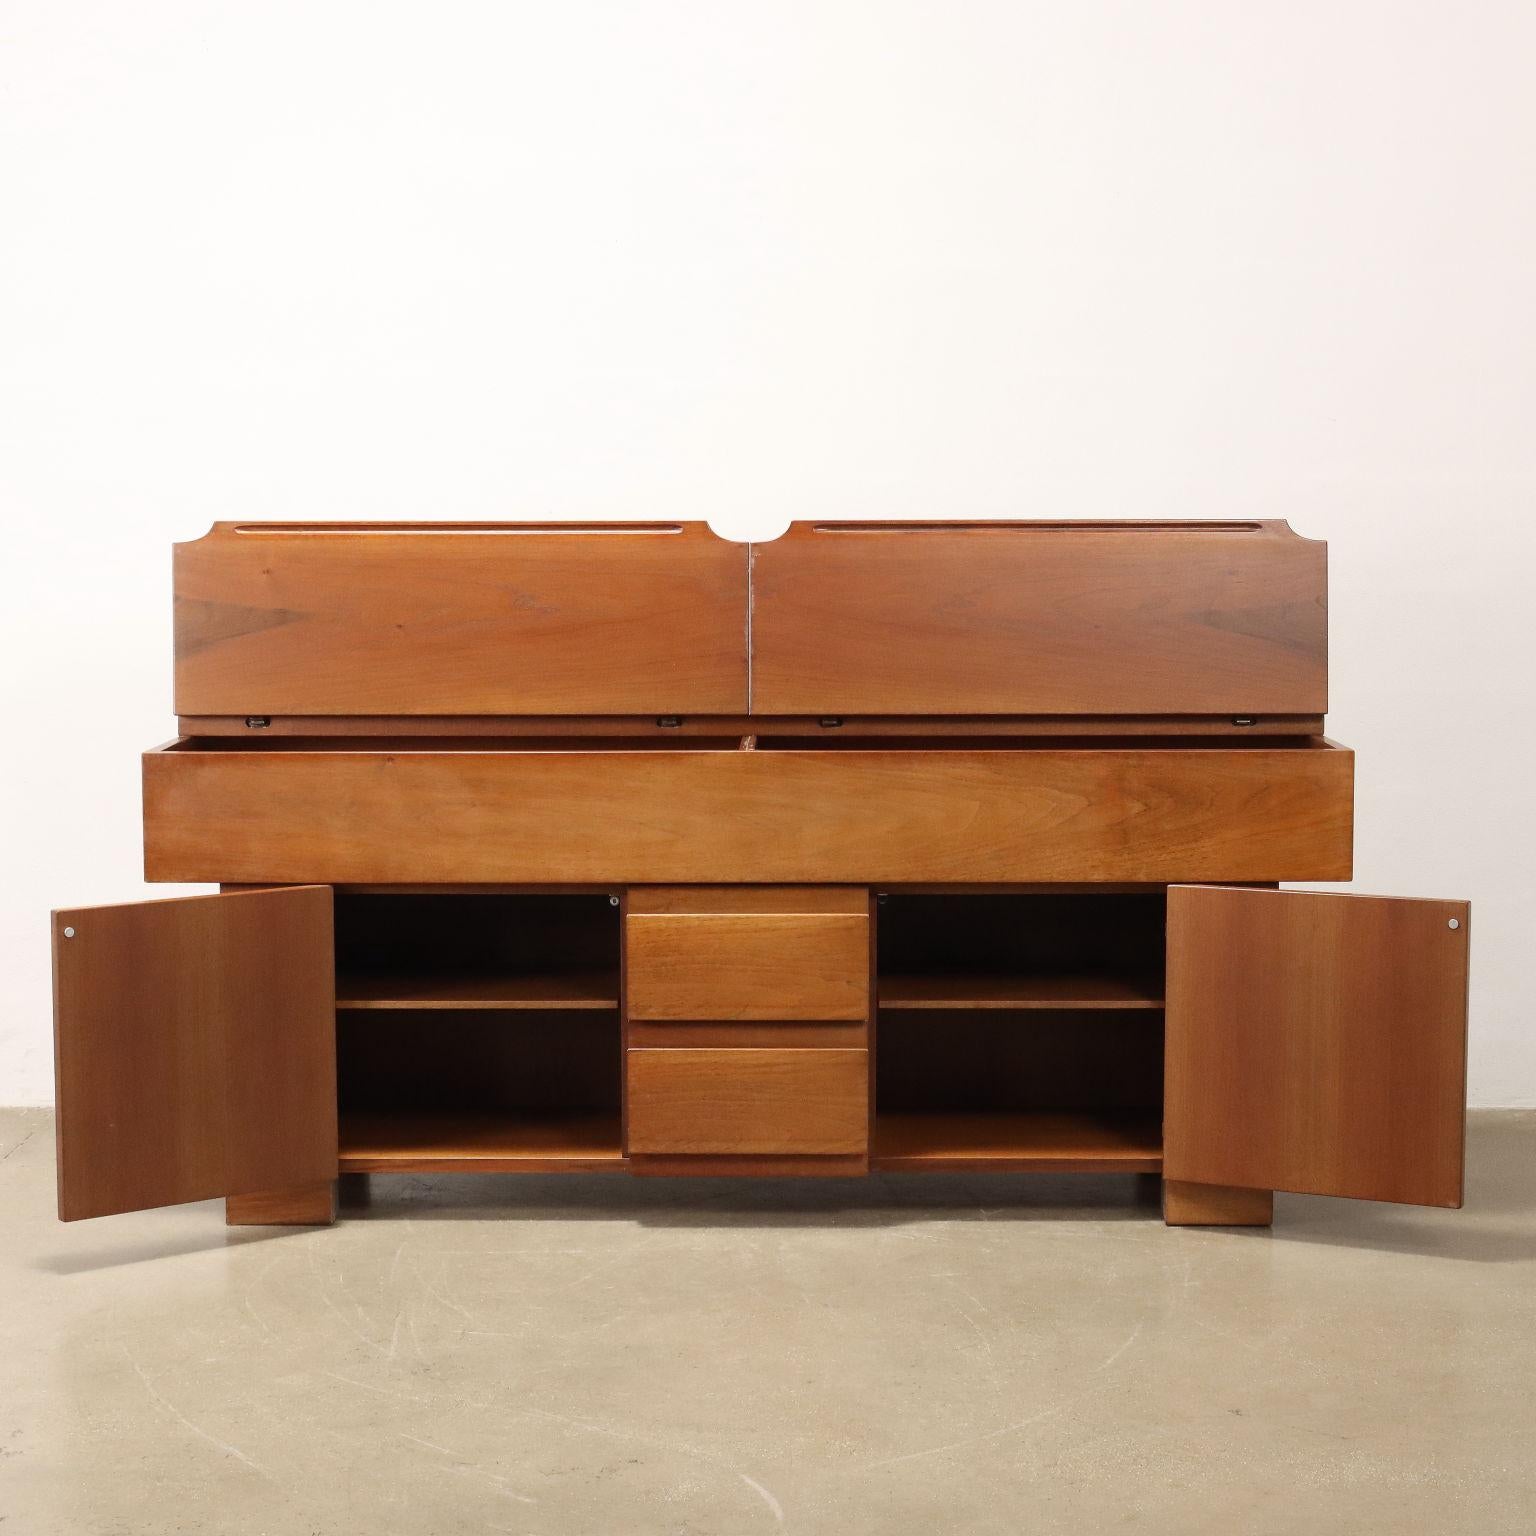 Mid-Century Modern 'Torbecchia' cabinet by Giovanni Michelucci for Poltronova 1960s-70s For Sale